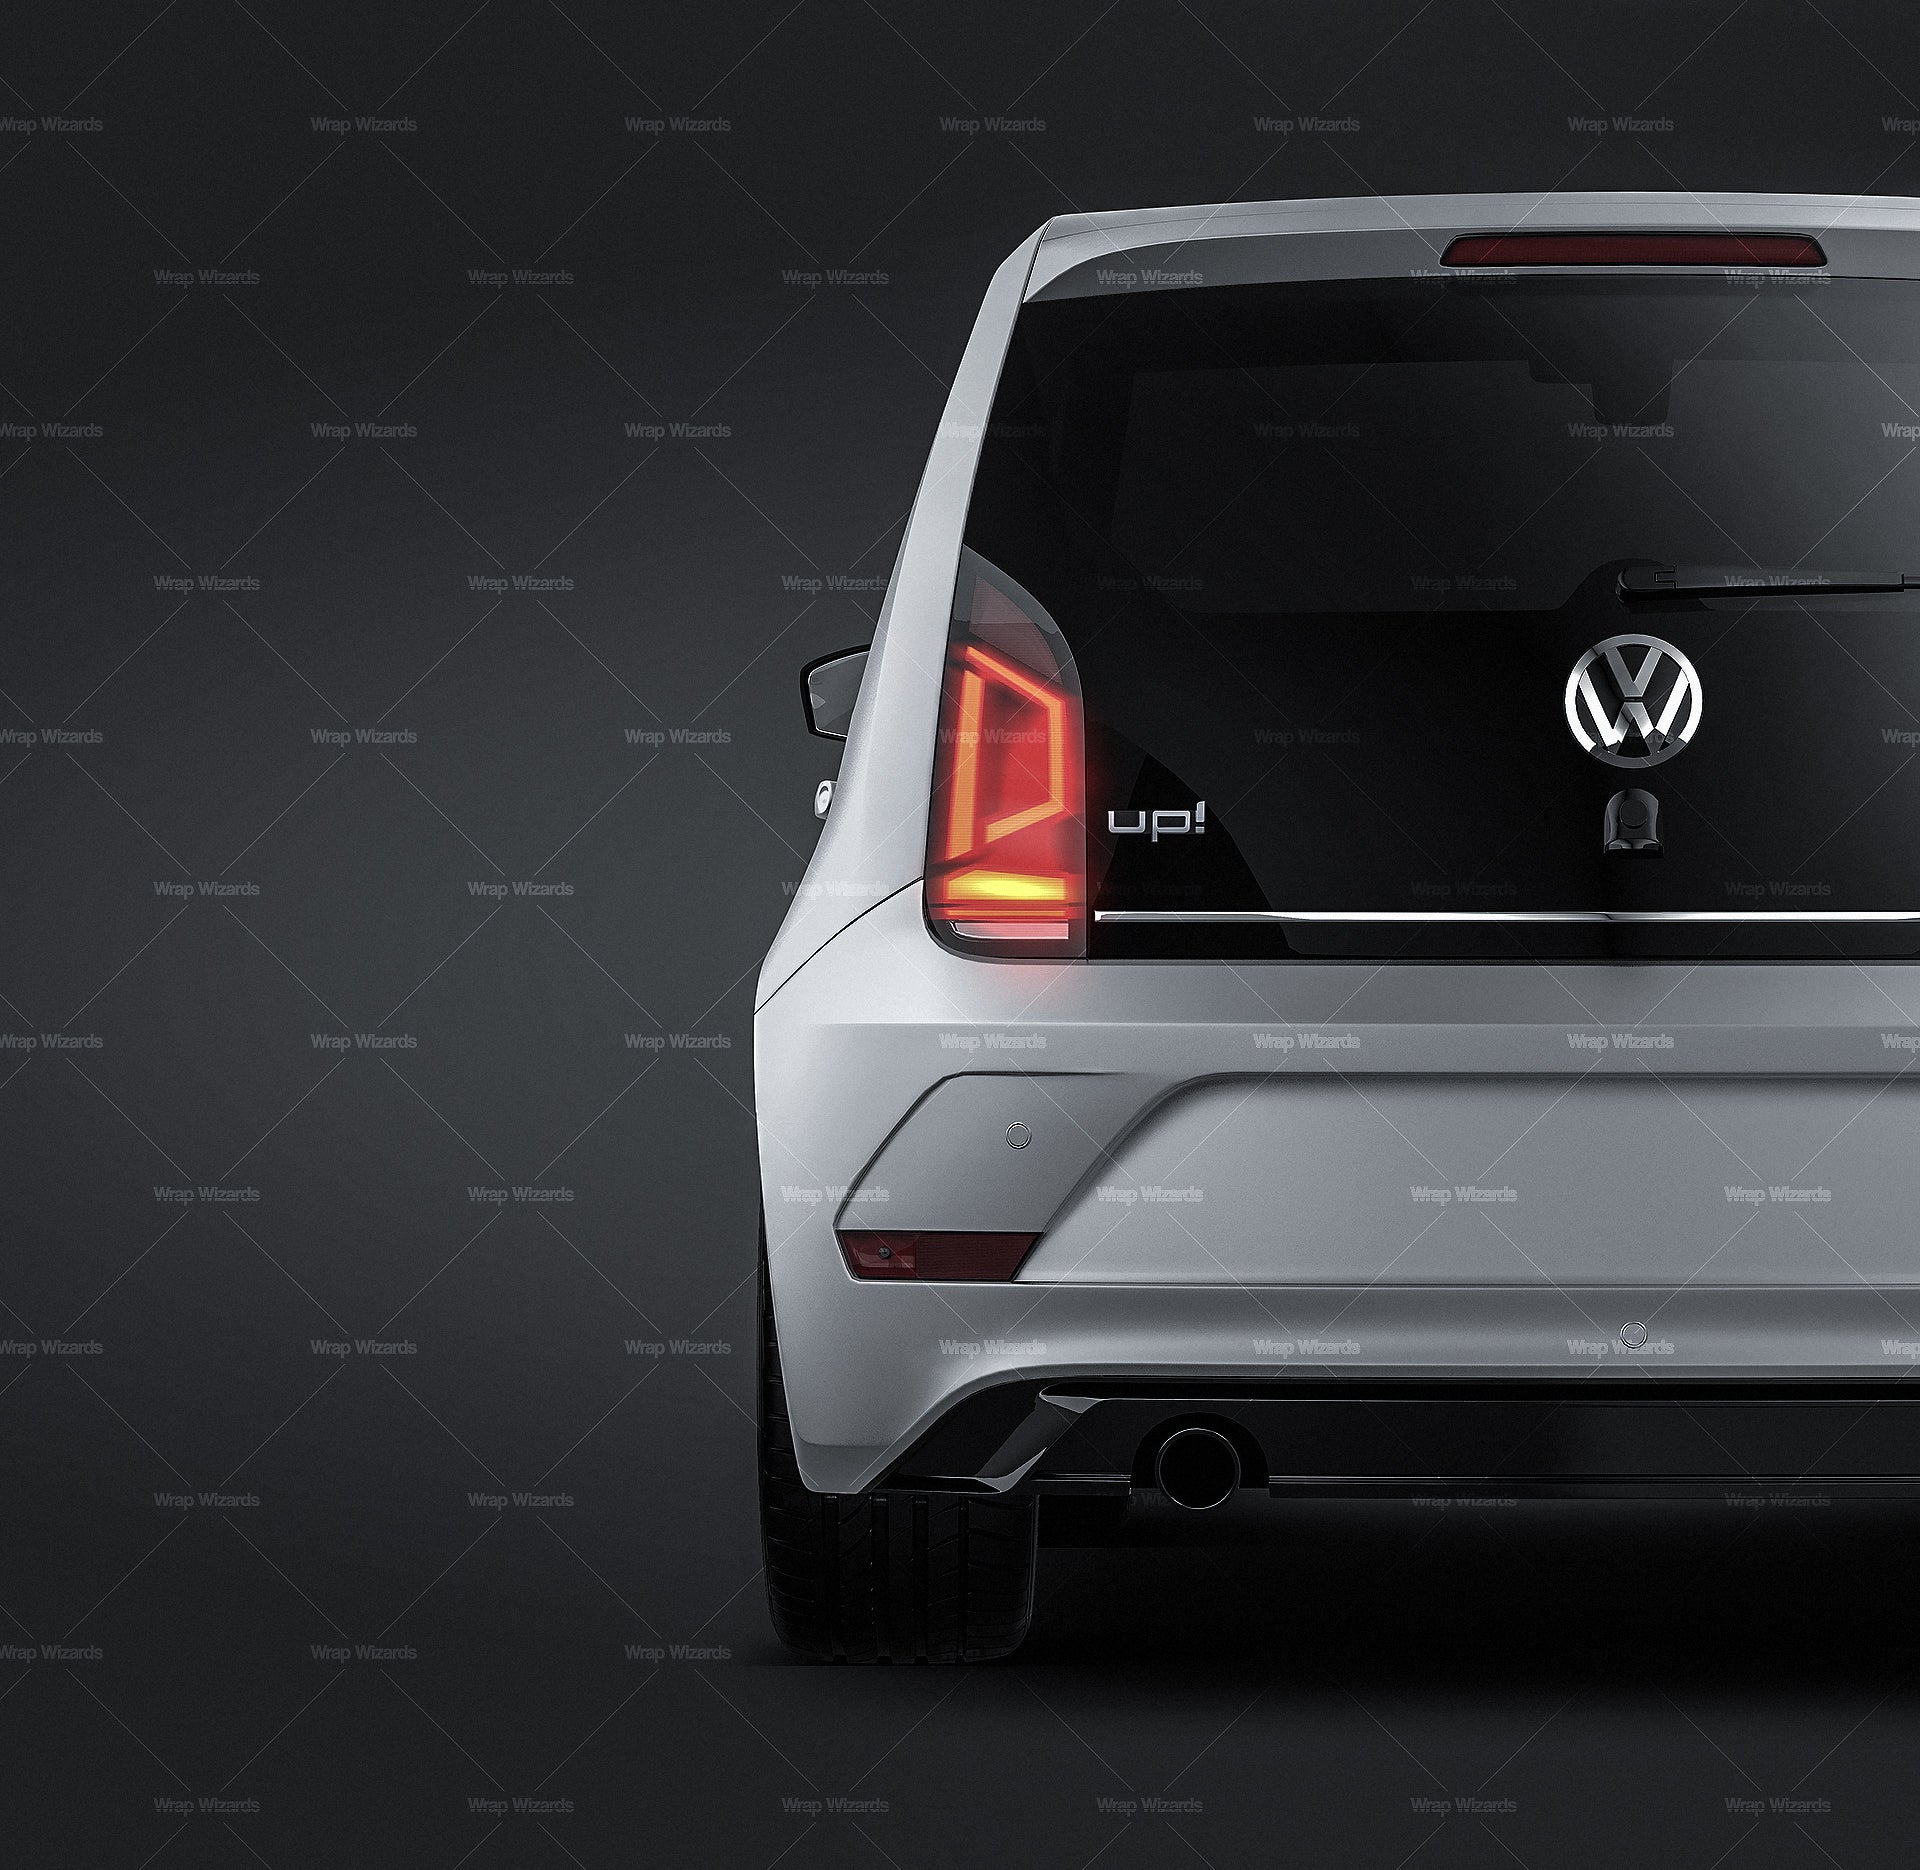 Volkswagen UP! 5-door 2018 satin matt finish - all sides car mockup template.psd